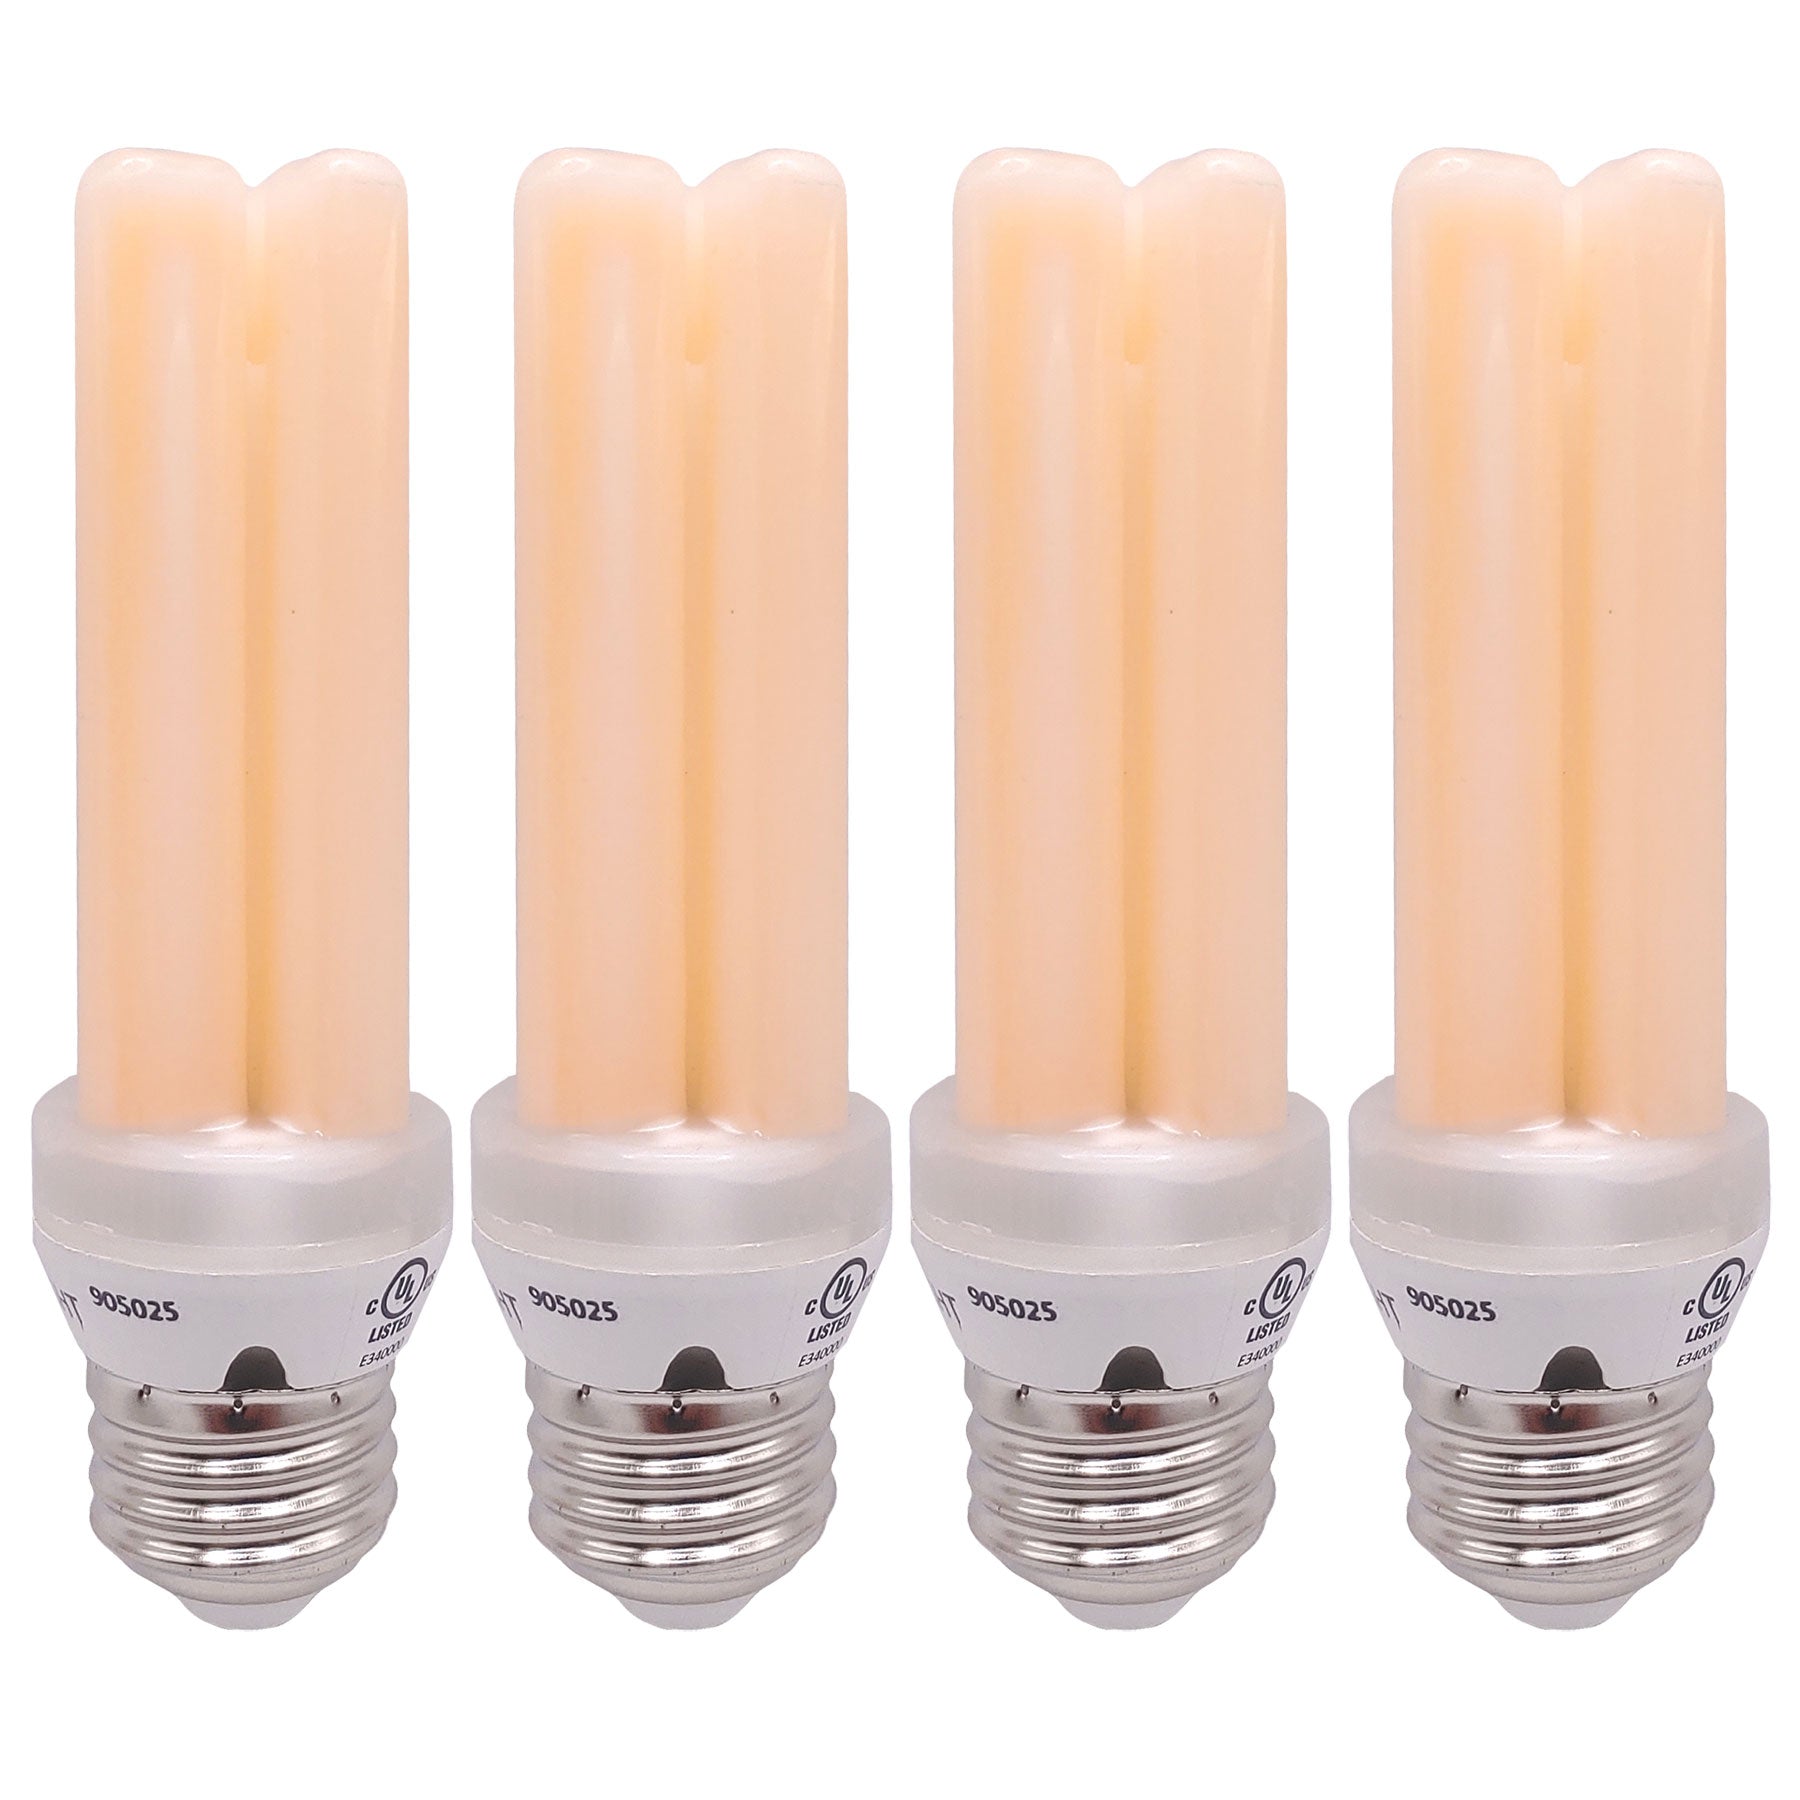 Viribright Viristick 100-Watt Equivalent E26 LED Light Bulb 4000K Cool White / 4 Pack 759605-4